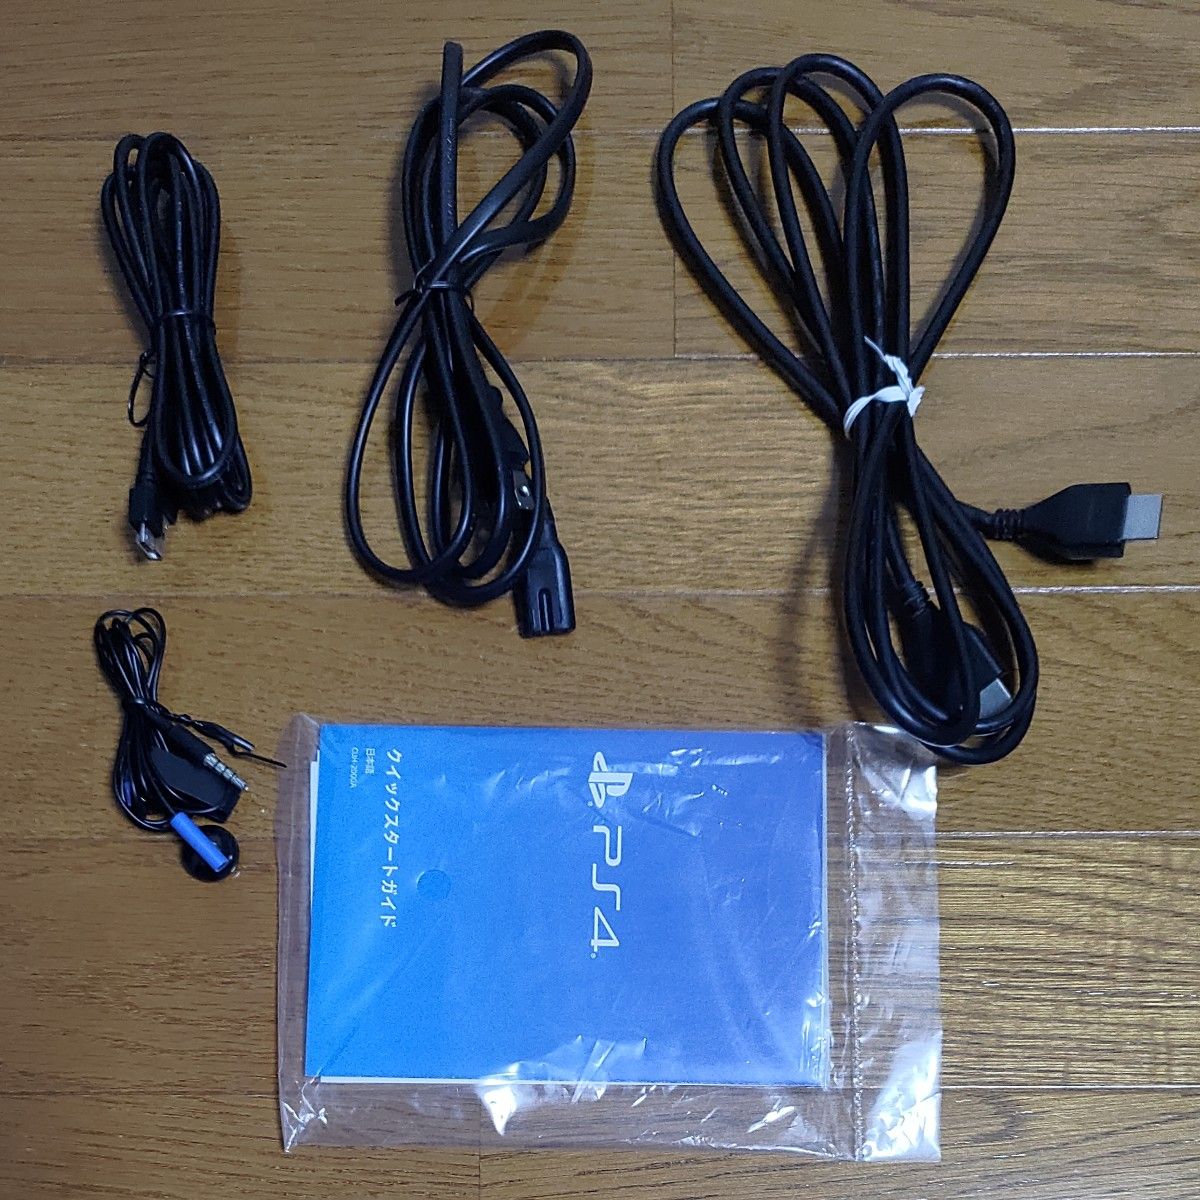 PlayStation4 ジェット・ブラック 500GB CUH-2000AB01